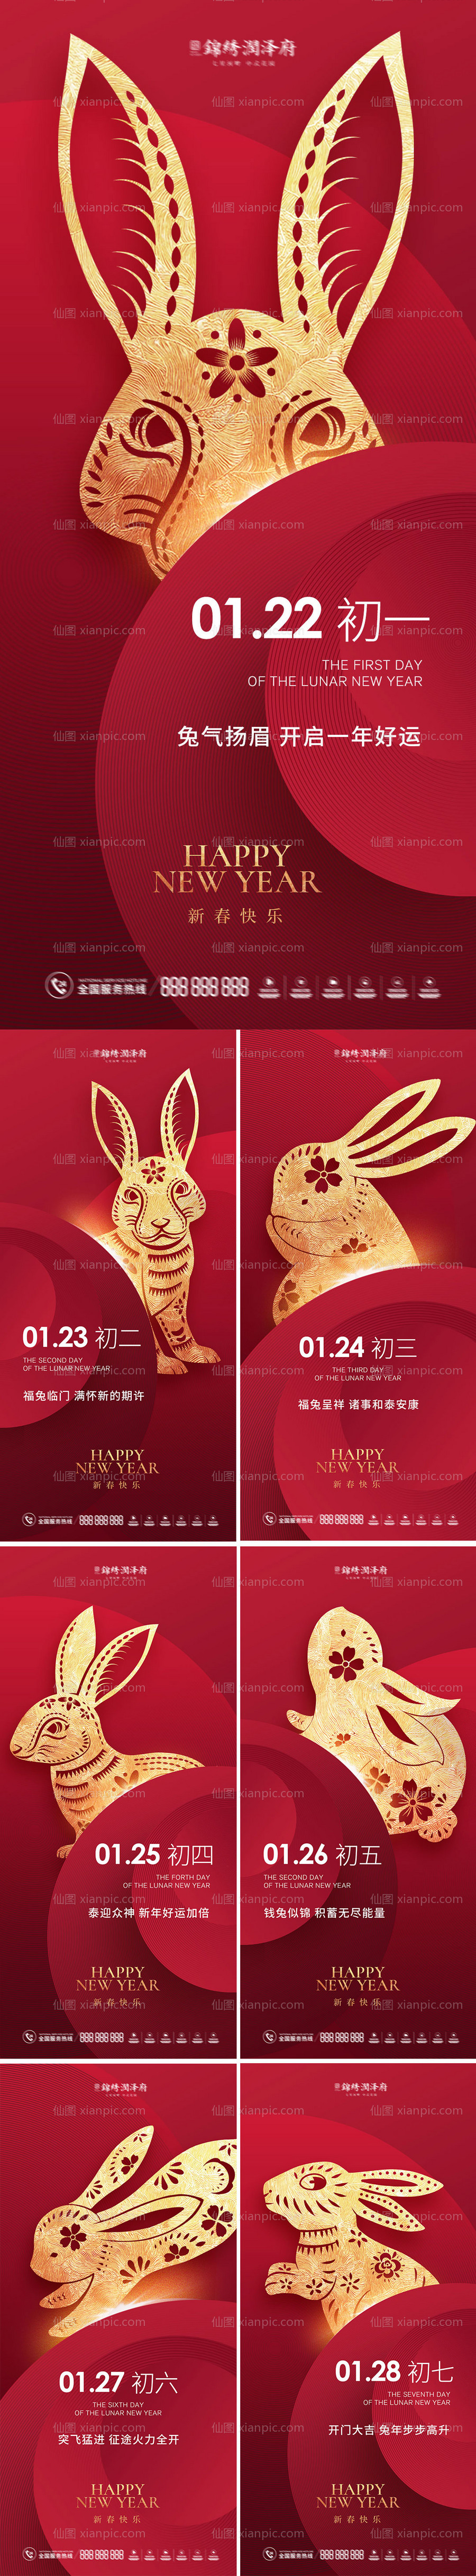 素材乐-兔年春节初一至初七海报系列